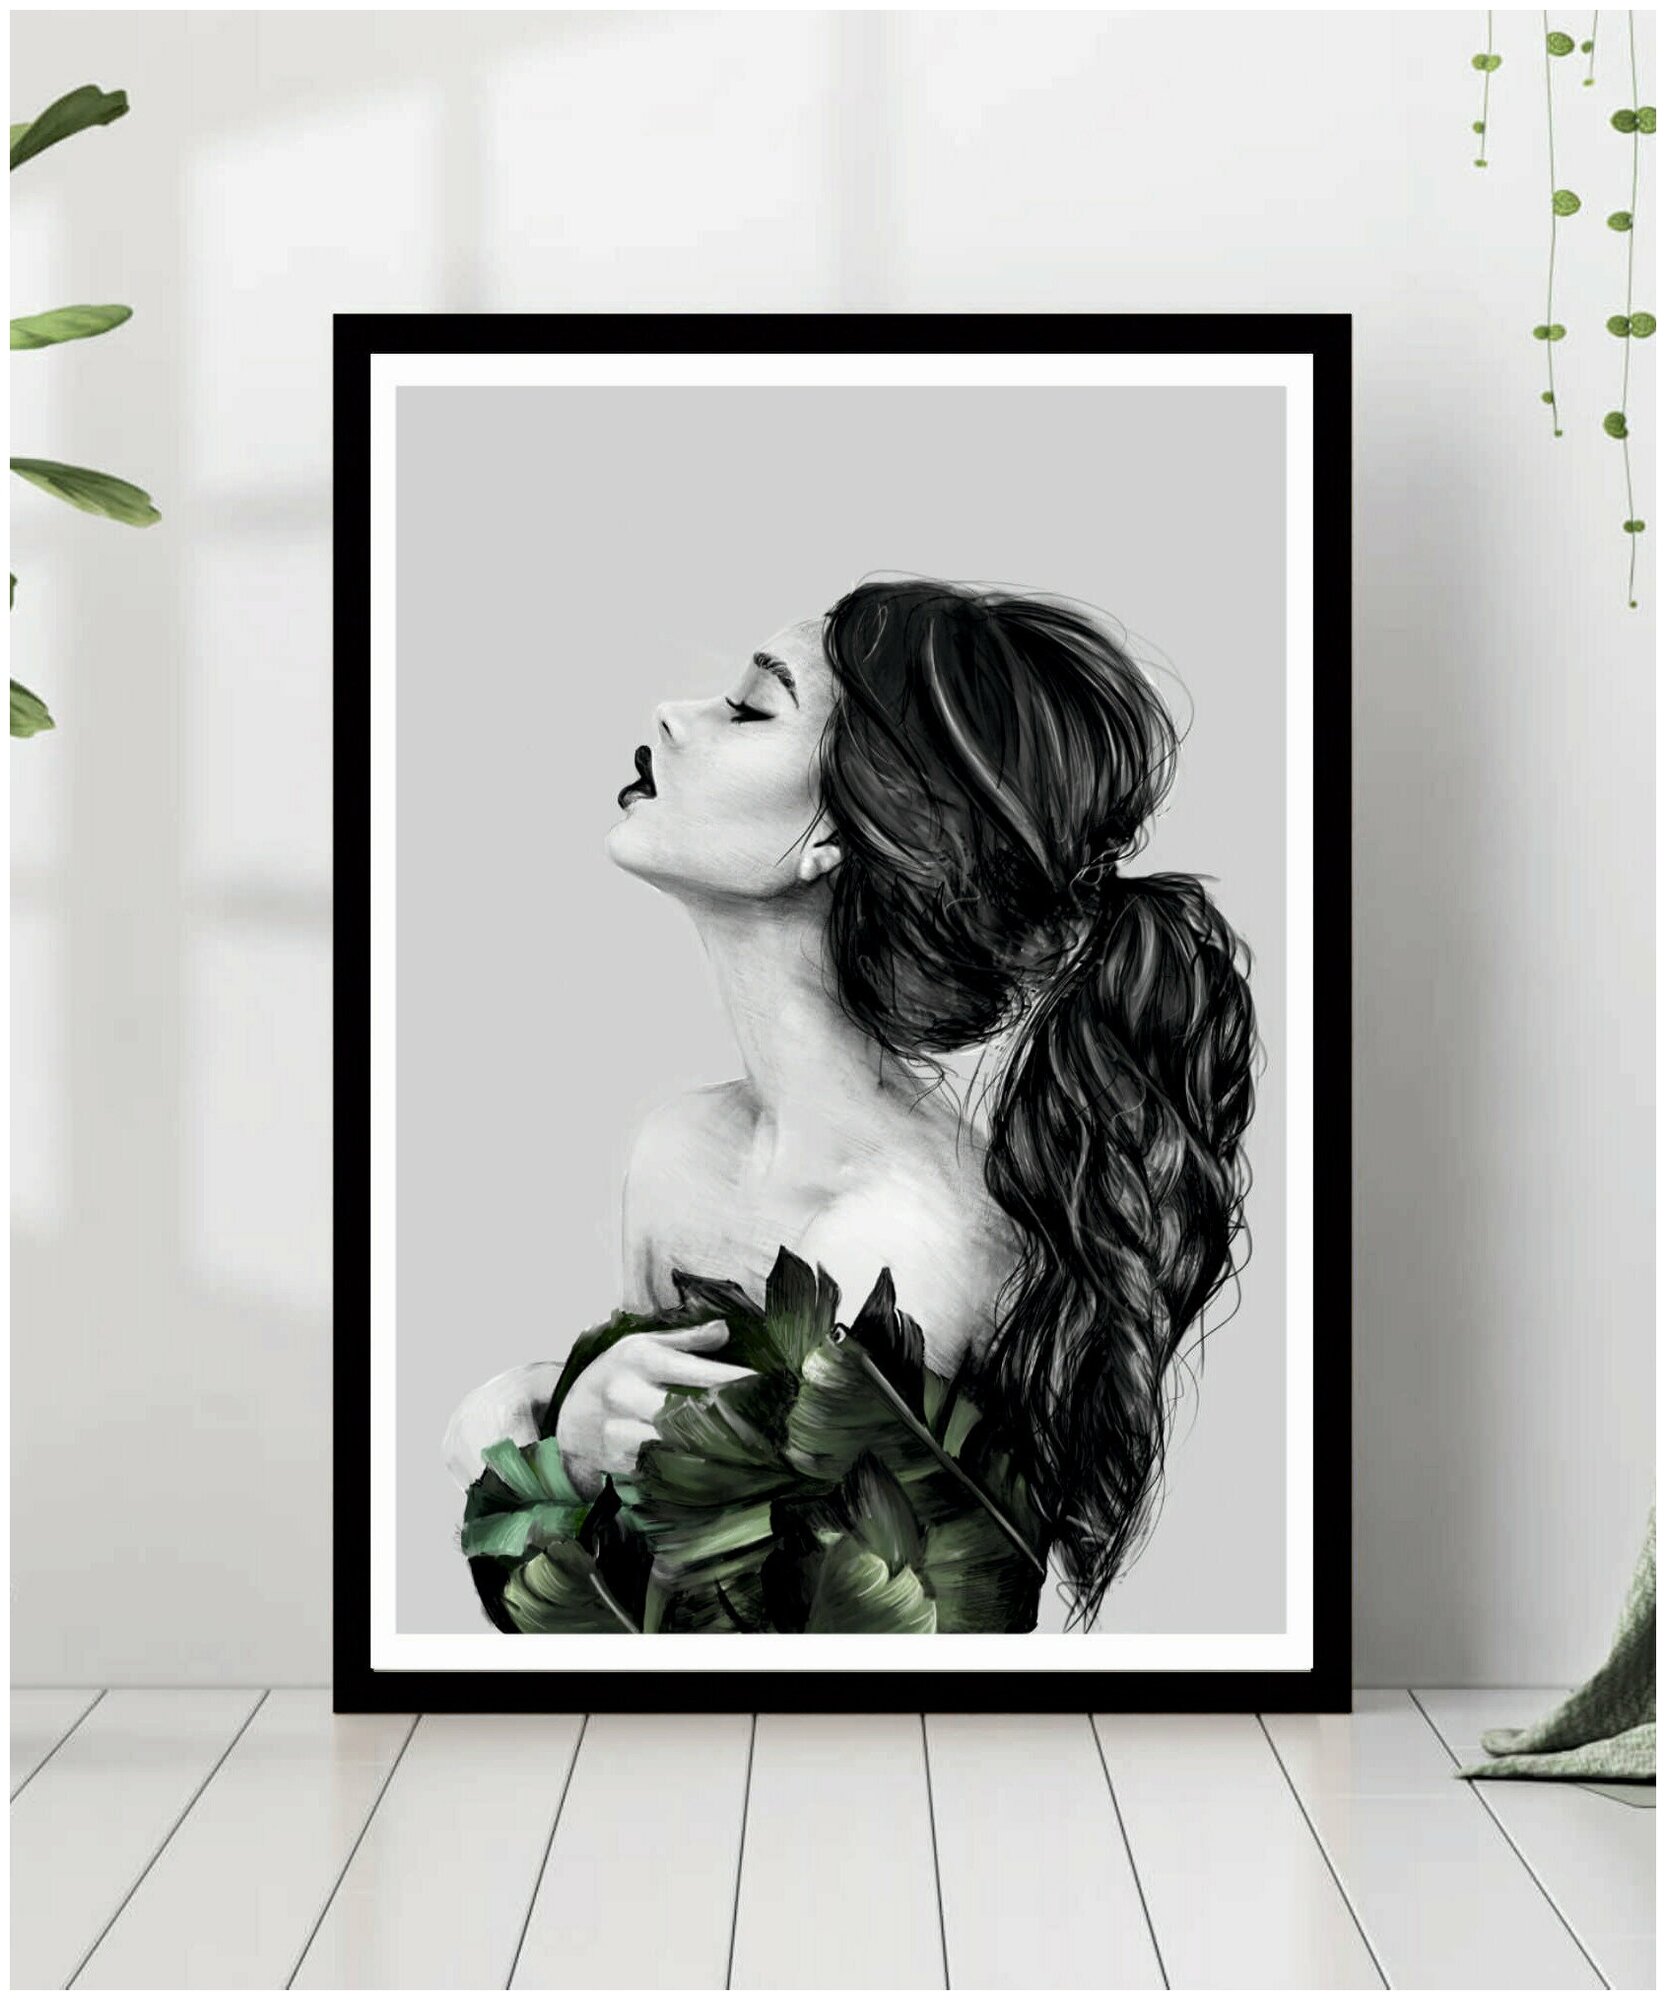 Постер В рамке "Силуэт девушки, черно-белый рисунок" 50 на 70 (черная рама) / Картина для интерьера / Плакат / Постер на стену / Интерьерные картины